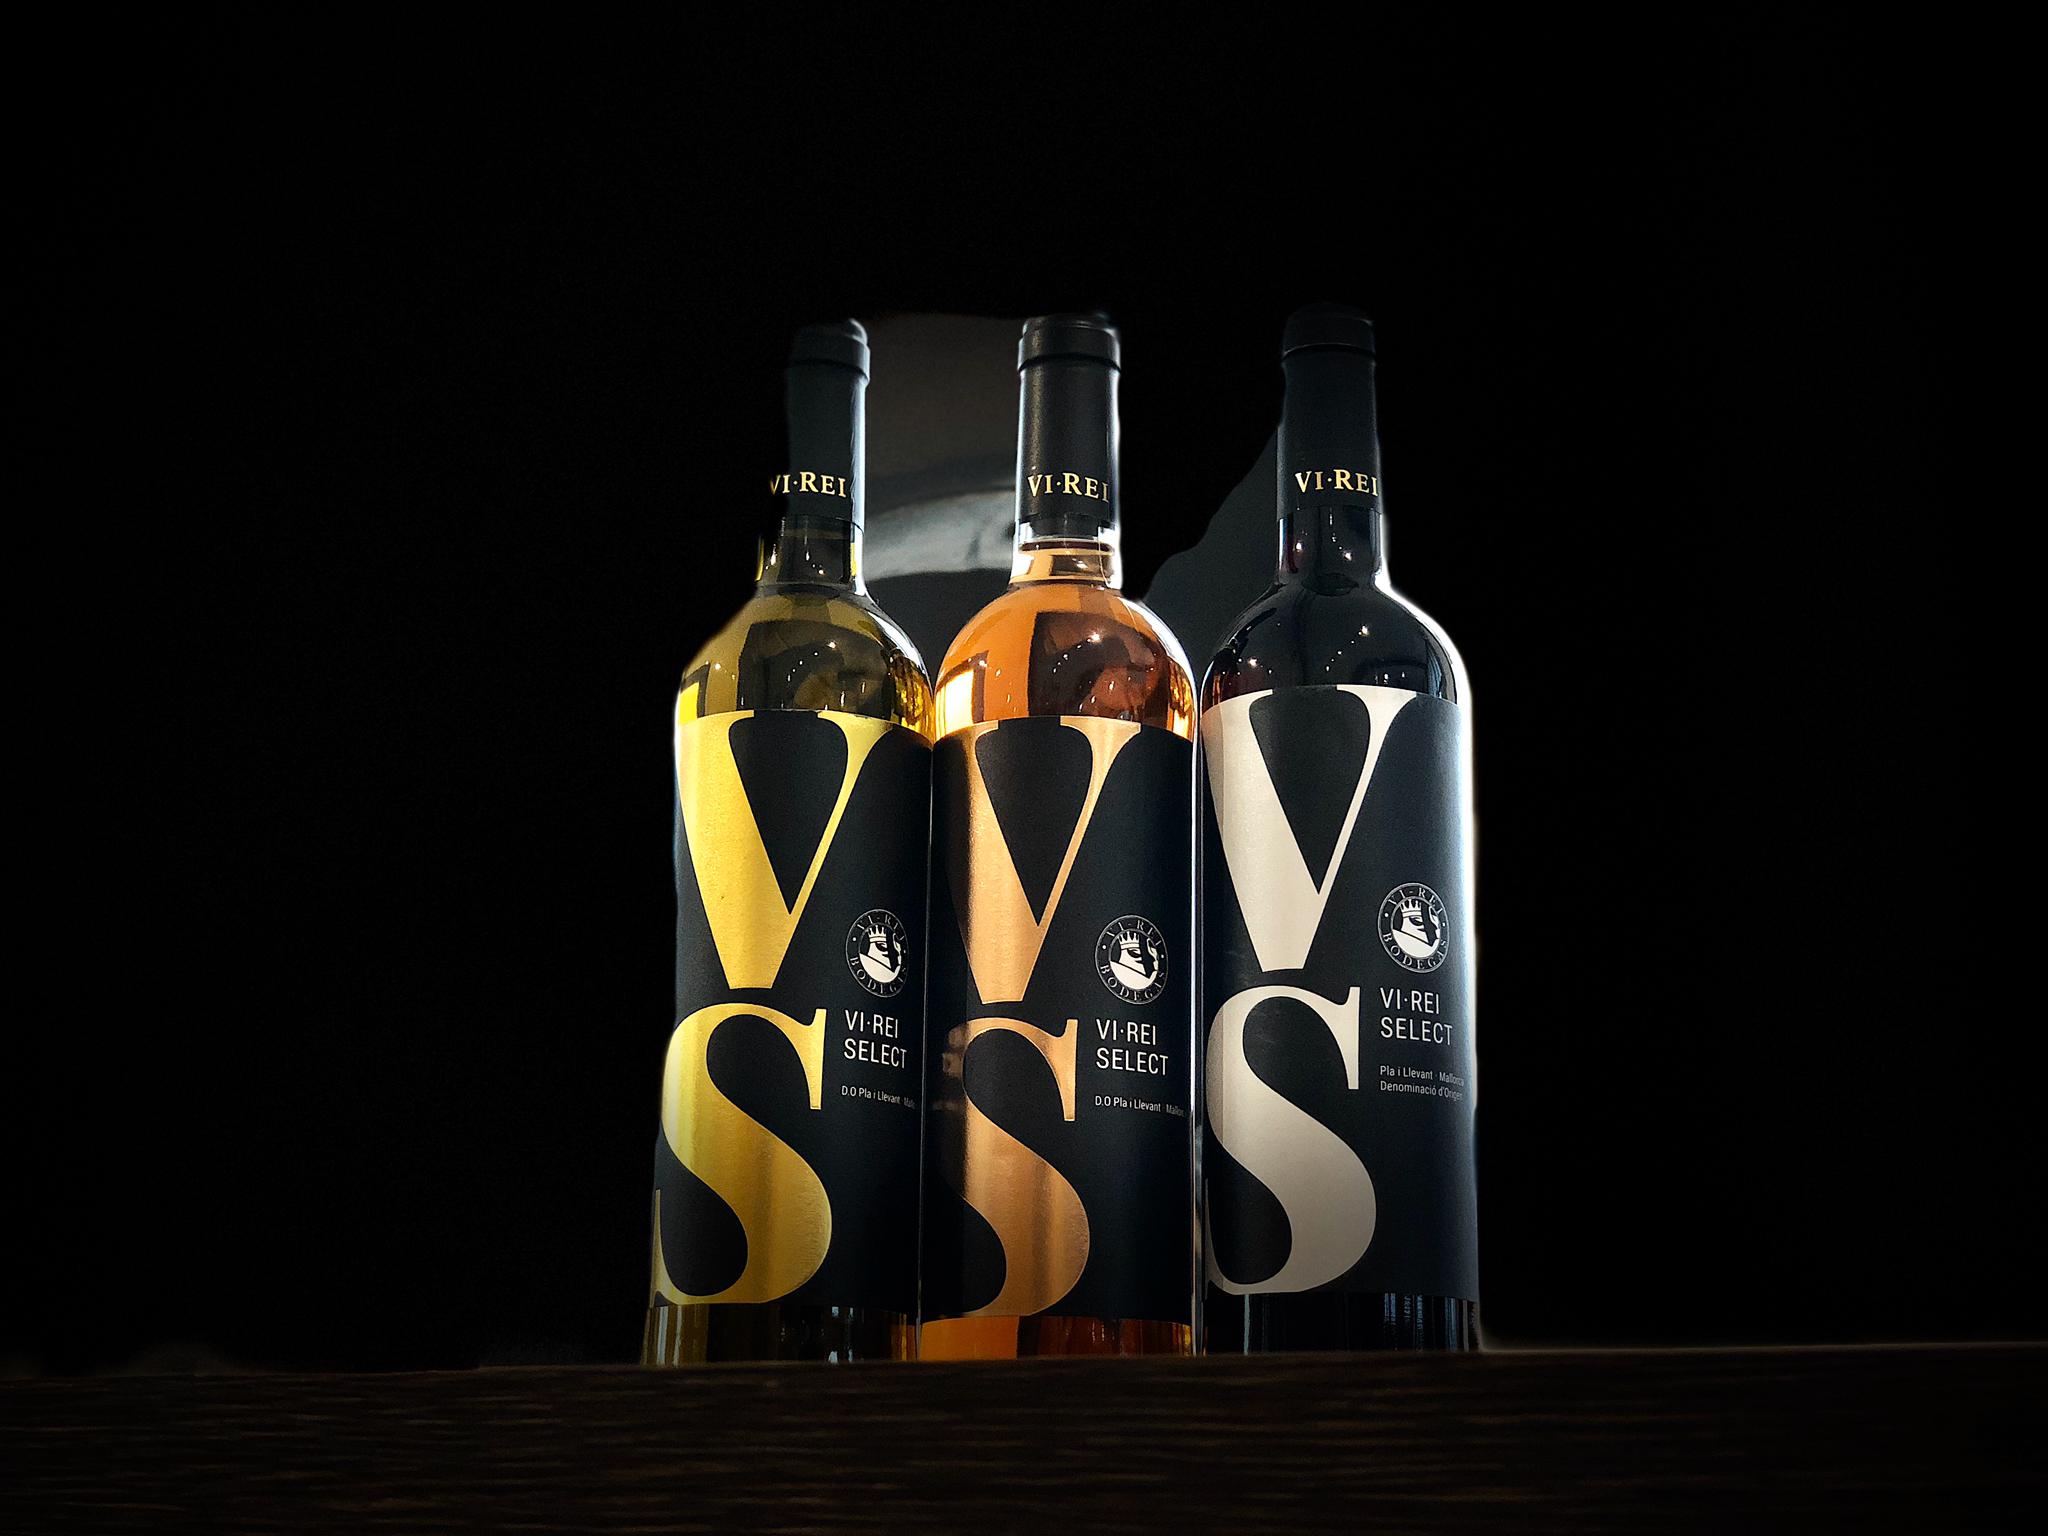 Imatge amb diferents vins de Cellers Vi Rei